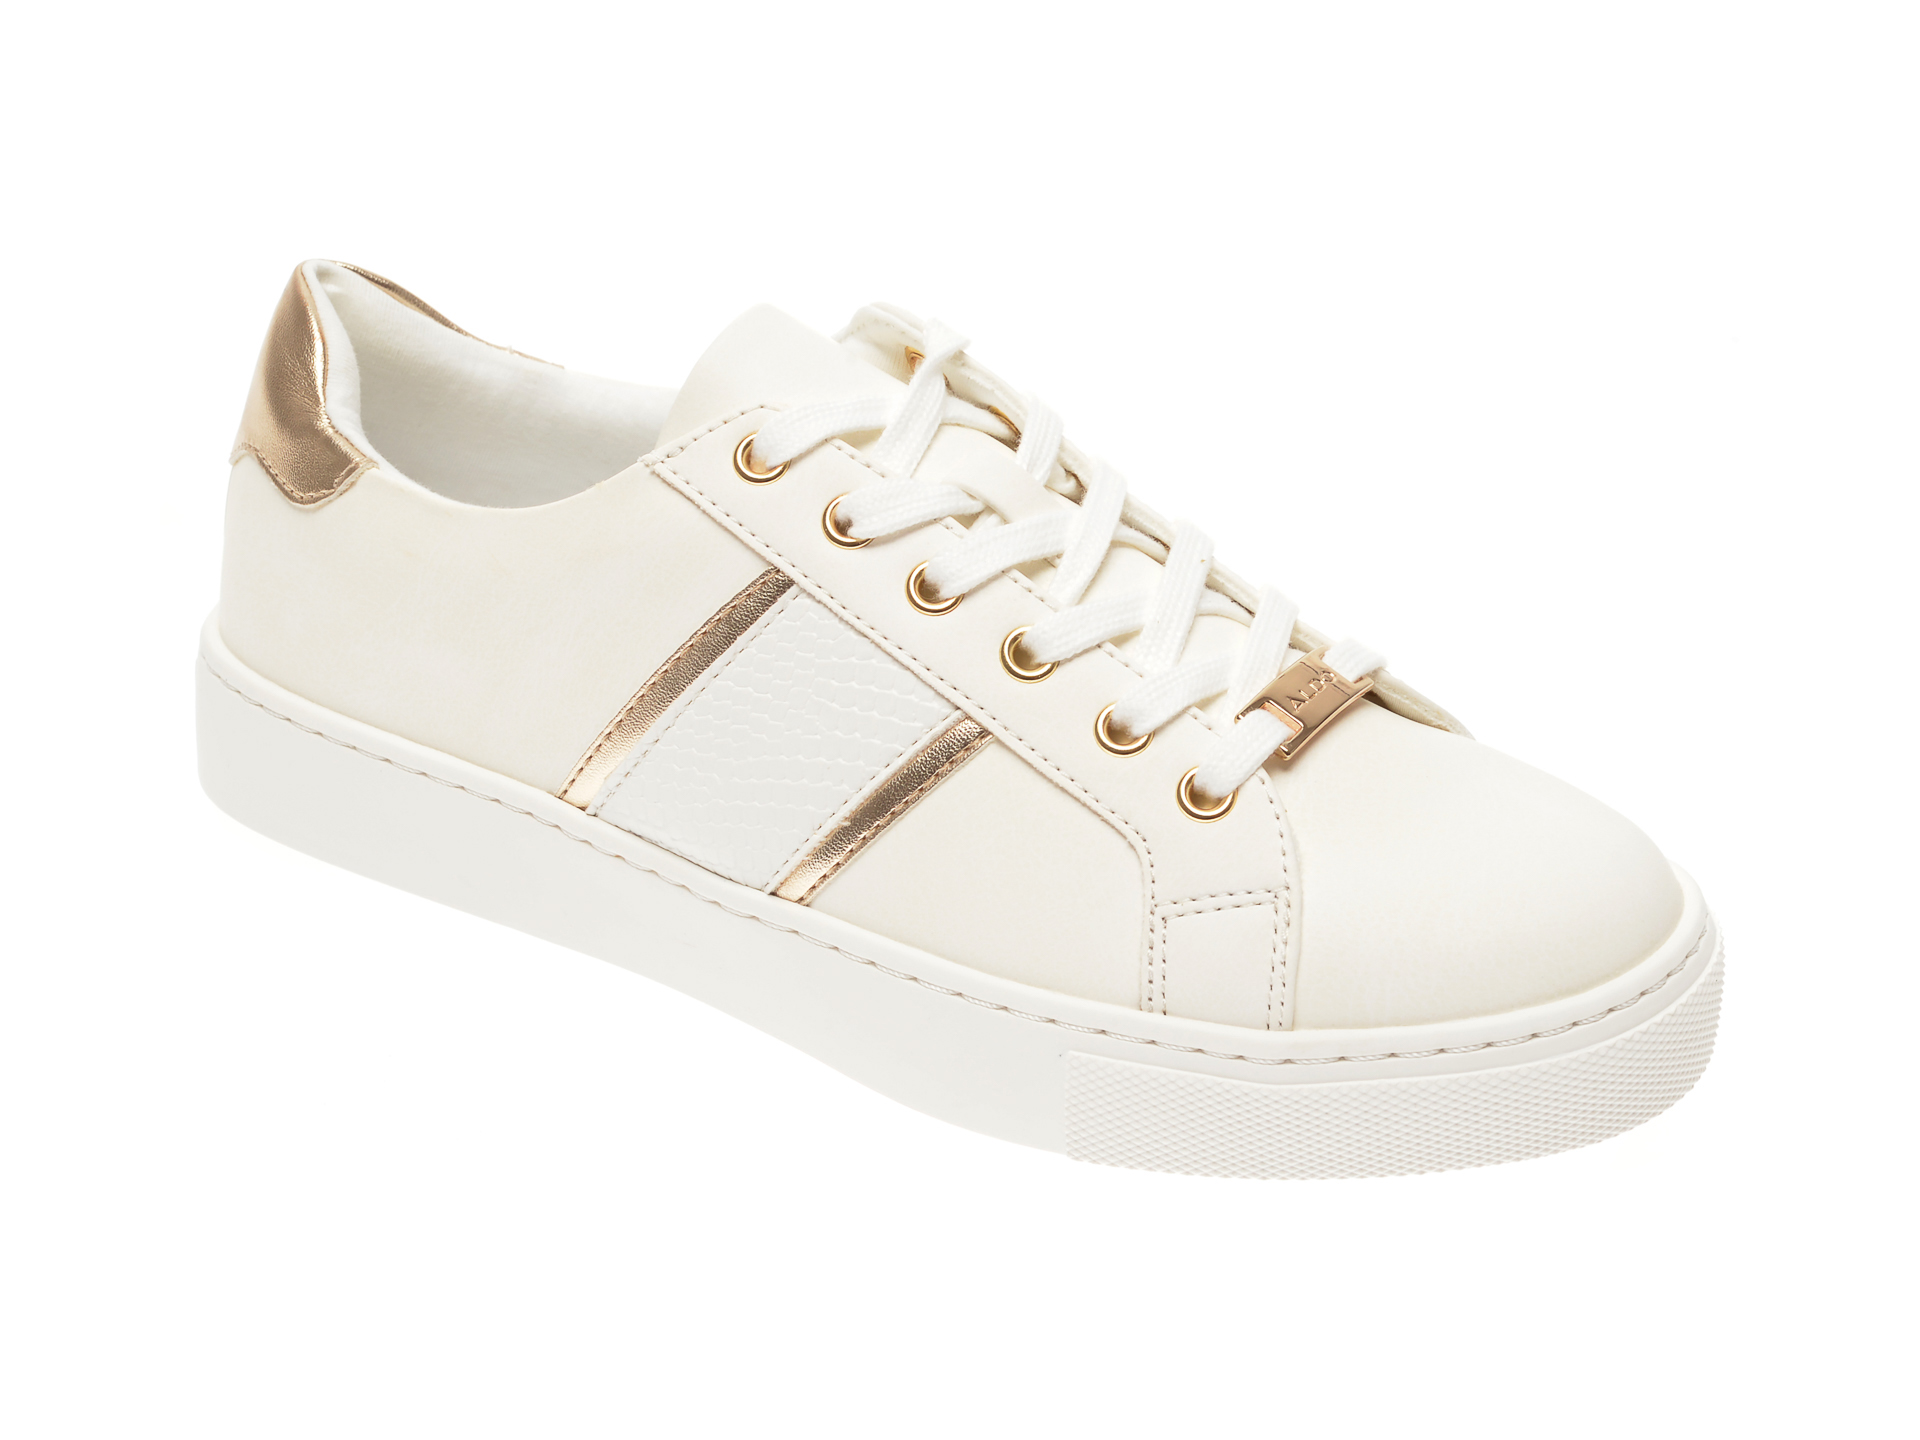 Pantofi sport ALDO albi Strelley710, din piele ecologica